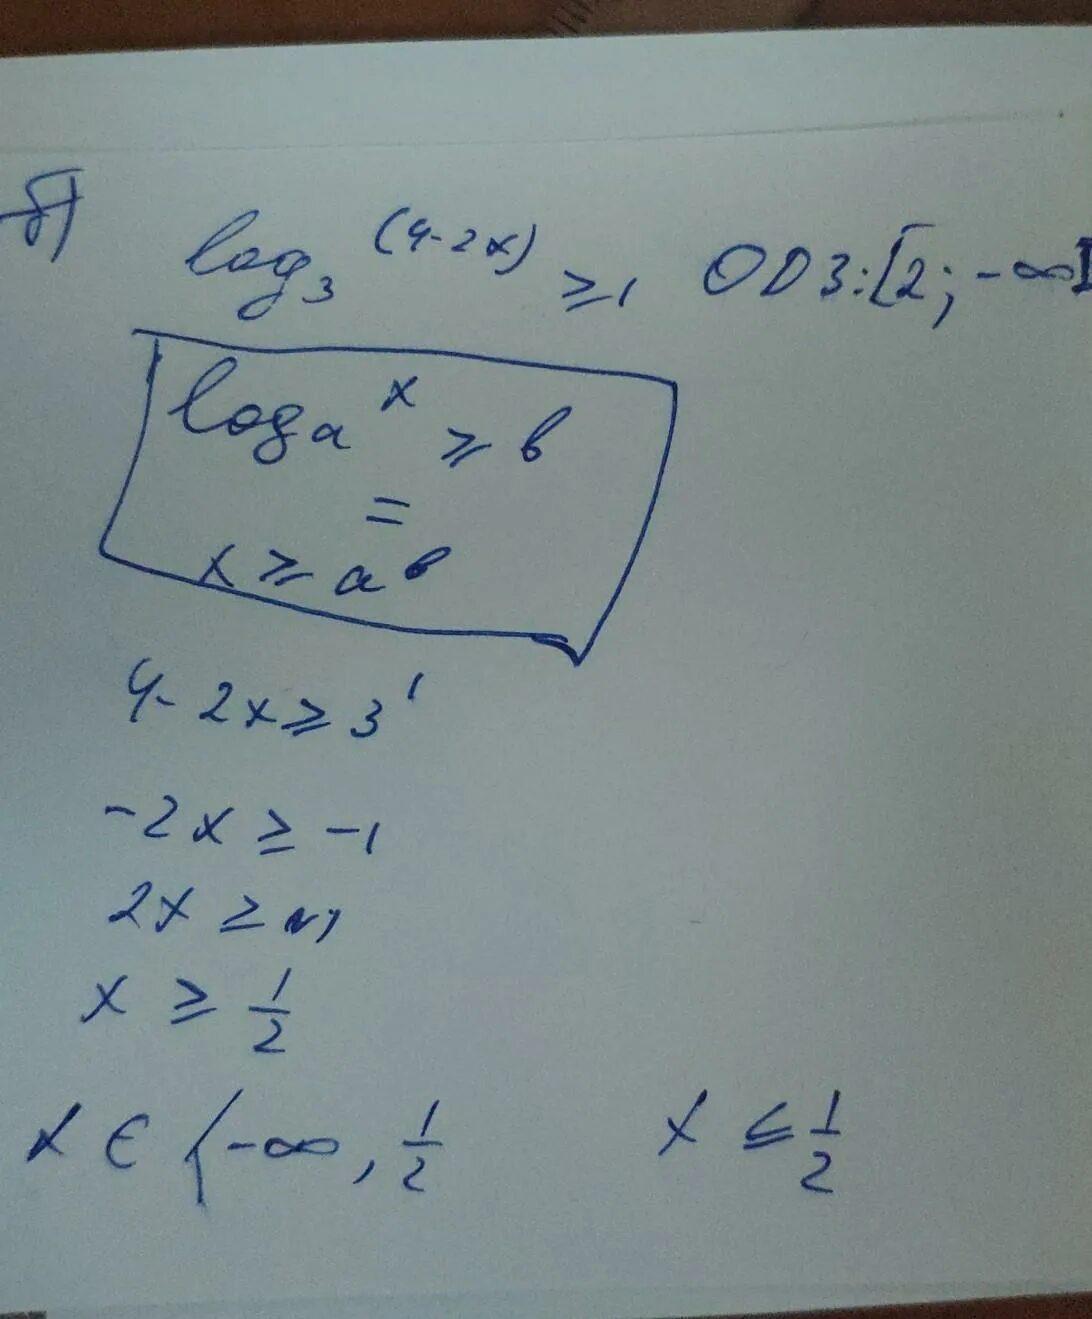 Log 2 x больше 3. Log2 x больше или равен -2. Log2 x больше или равно 1. Log2(x²-2x)больше или равно 3. Log1 3 x-1 больше или равно log1/3.